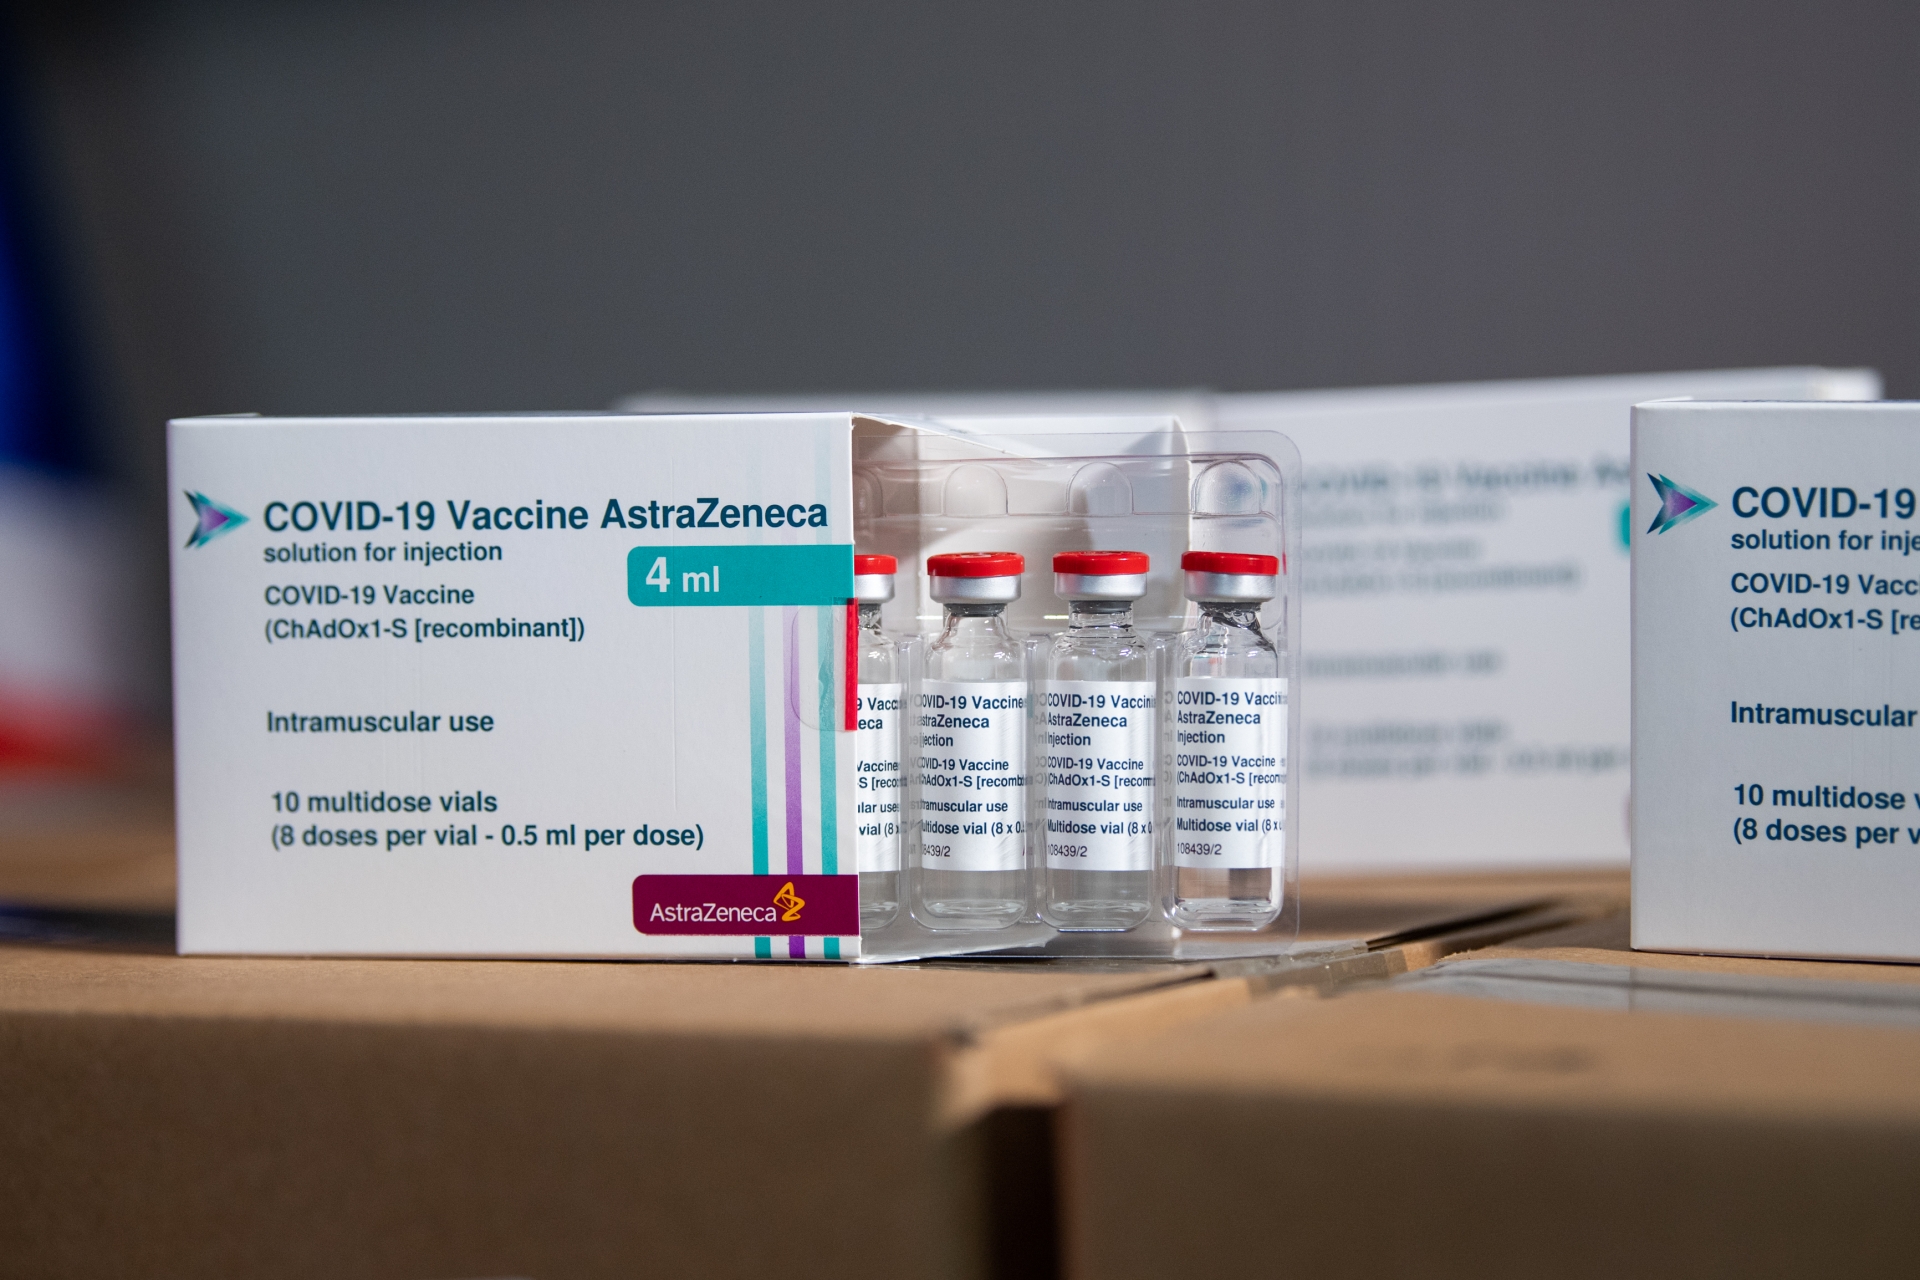 Over 1.2 million doses of AstraZeneca’s COVID-19 vaccine arrive in Vietnam